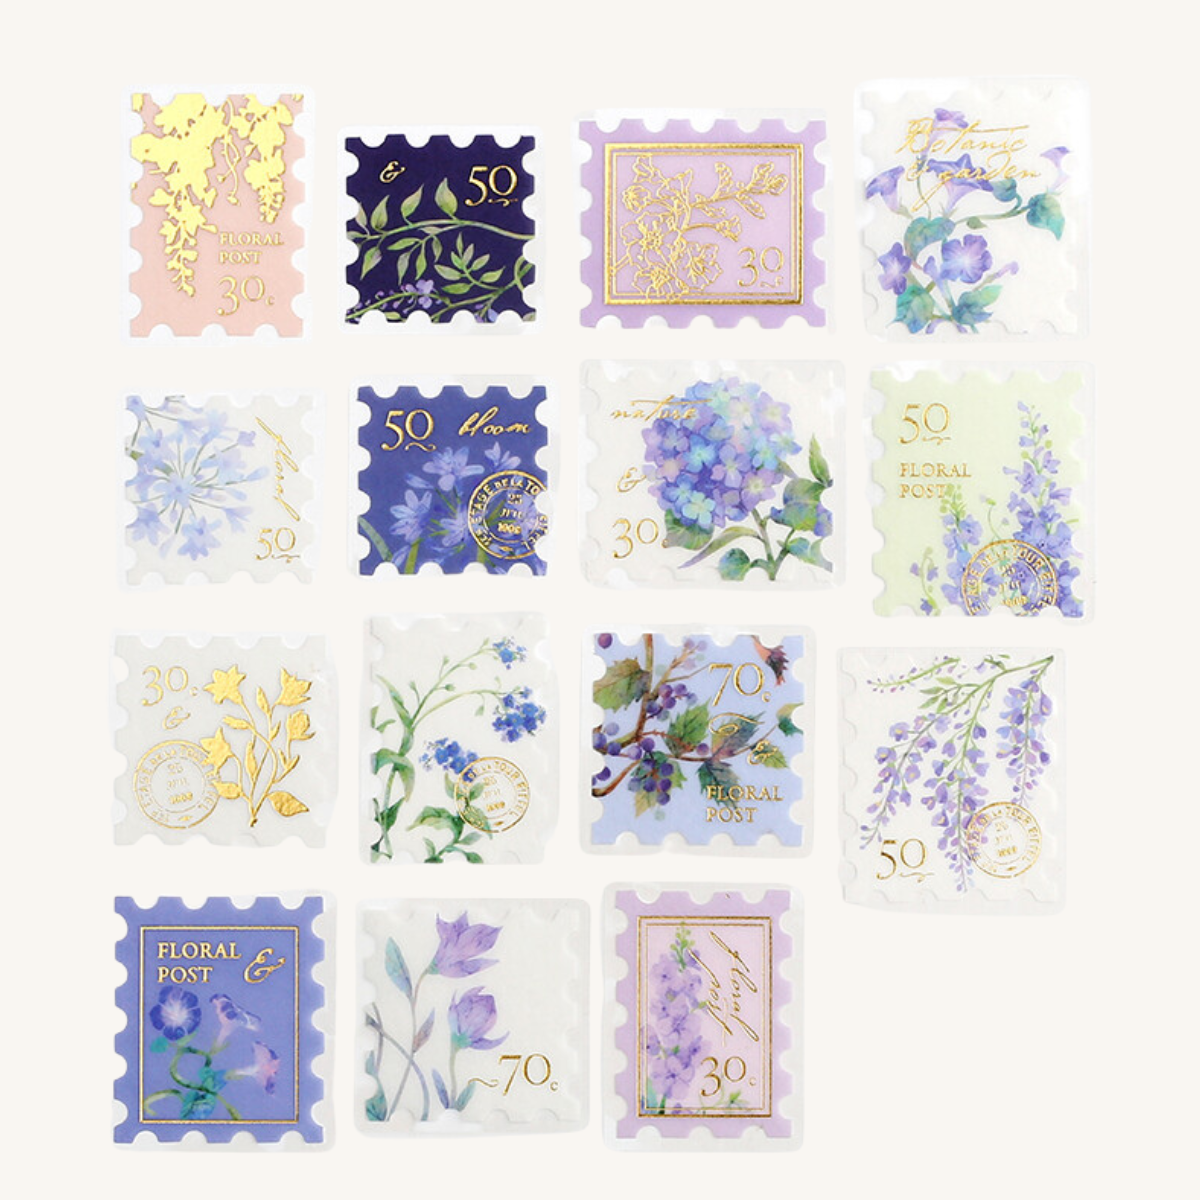 Pochette de 45 stickers en forme de timbres avec des motifs de fleurs dans les tons violet.